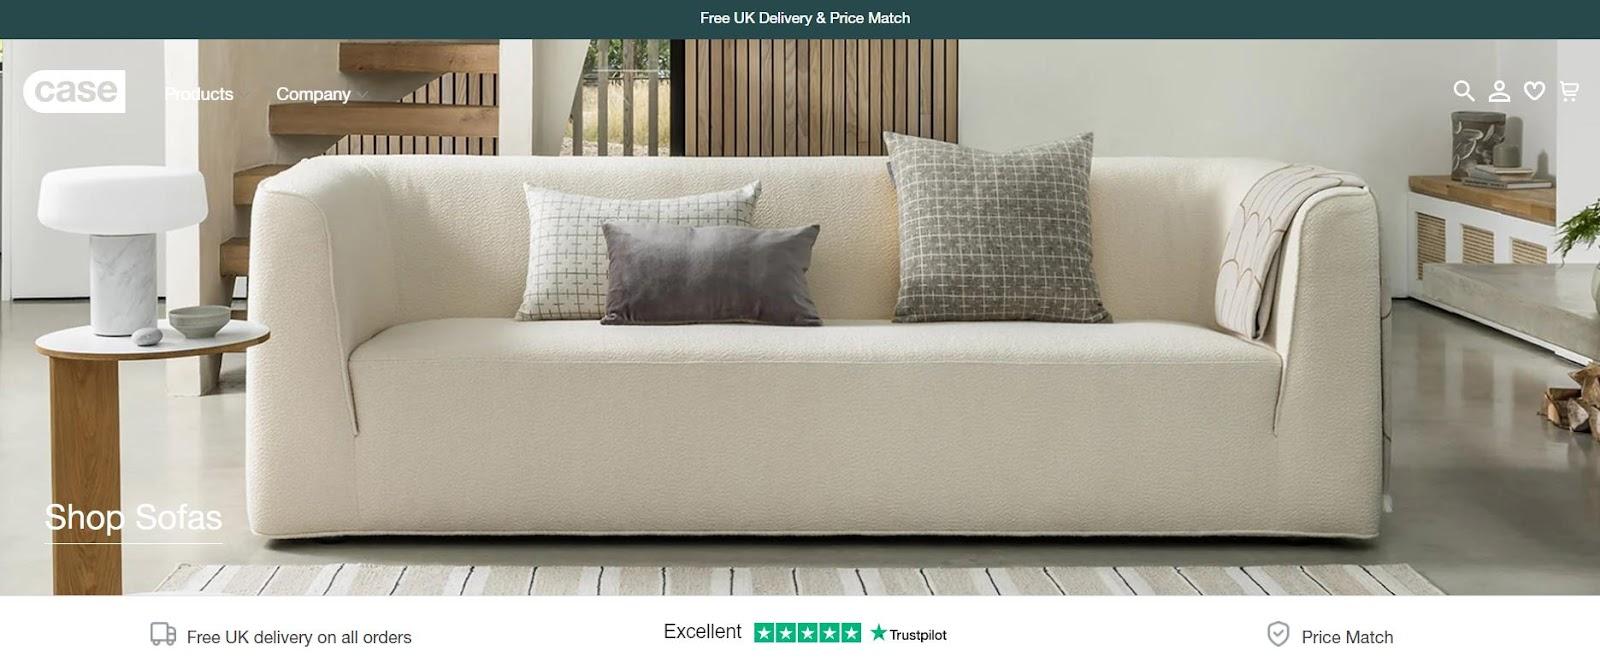 case furniture; best websites for furniture